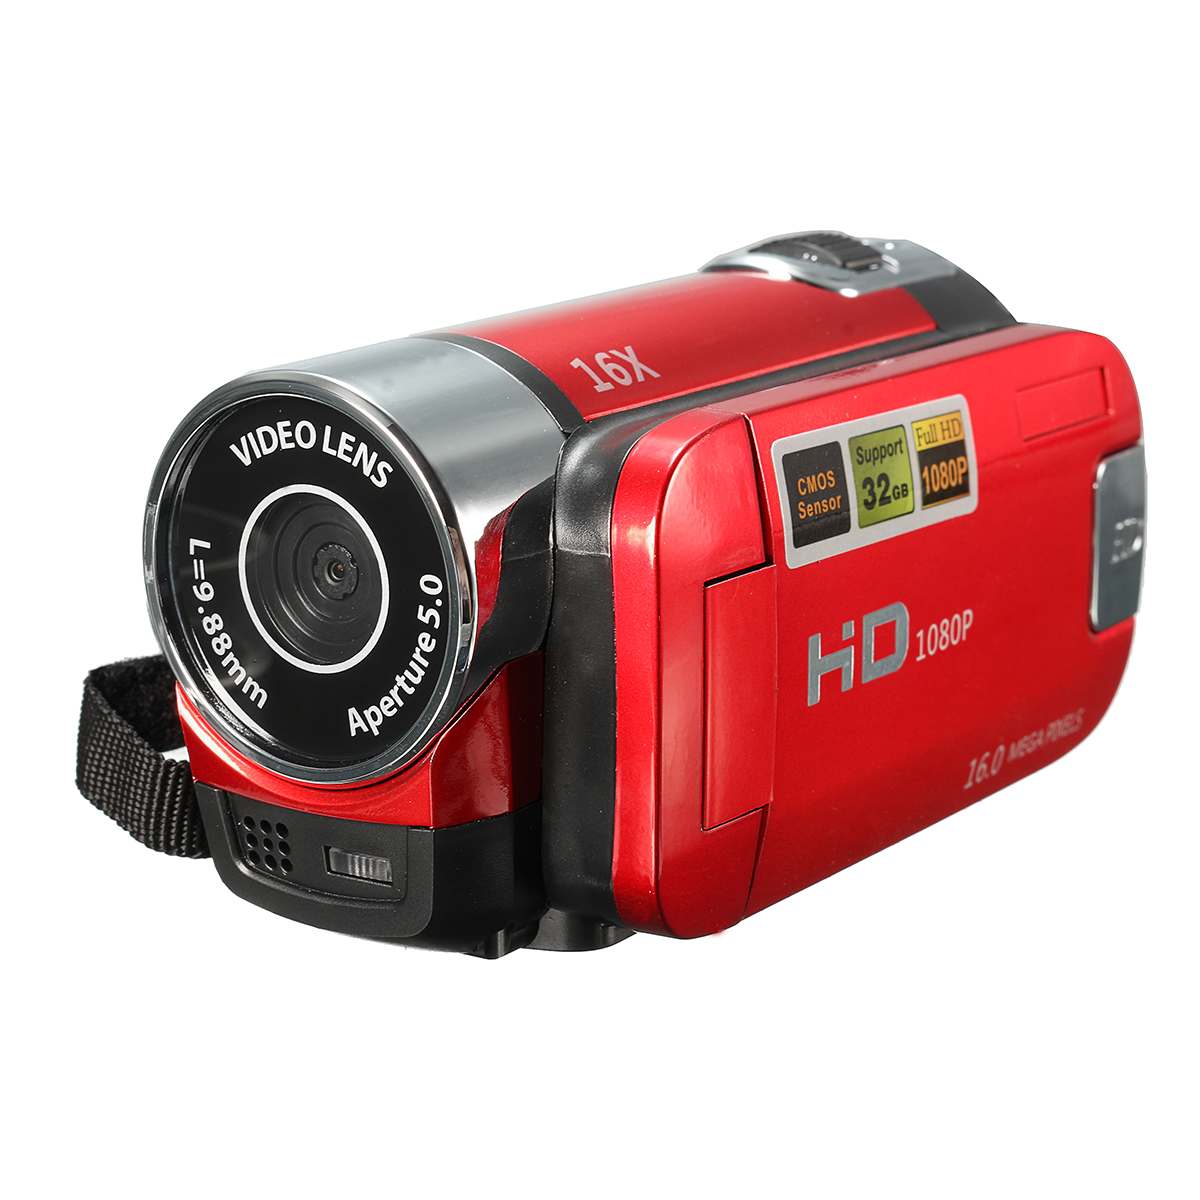 ดิจิตอลกล้องวิดีโอ กล้องวีดีโอกล้องถ่ายรูป ระบบตัวเลขความละเอียดสูงกล้องถ่ายวิดีโอกล้อง DV 16X Video Camera 16 Million Pixels HD 1080P Digitale Video